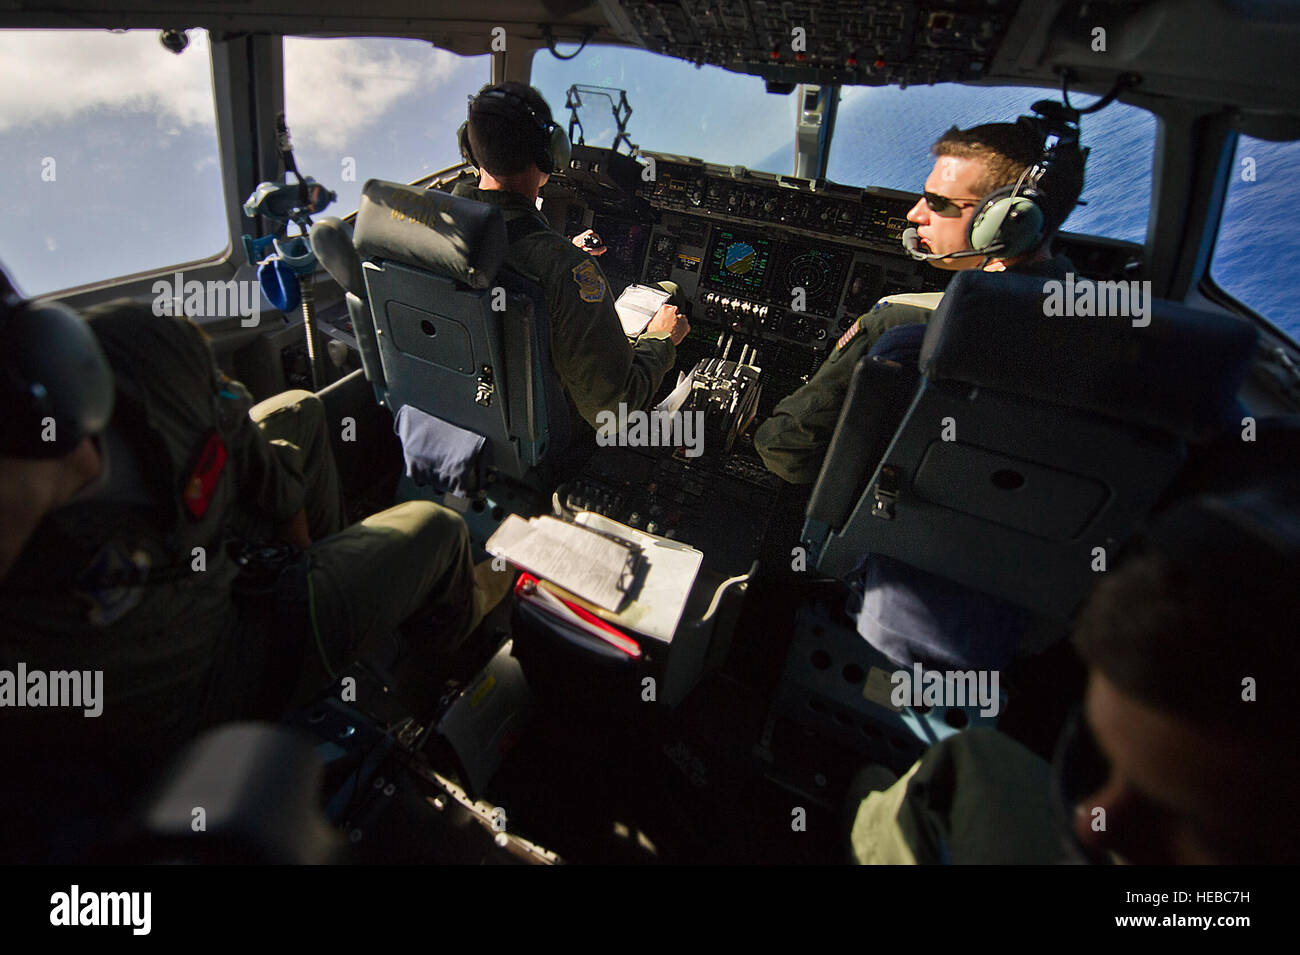 Stati Uniti Air Force Capt. Brian Pollock, 535th aria squadrone di sollevamento, C-17 Globemaster III pilota, vola un addestramento al combattimento per la Pohakuloa Area Formazione, (PTA) Hawaii, luglio 26, 2012, a sostegno del cerchione del Pacifico (RIMPAC) Esercizio 2012. Ventidue nazioni, più di 40 navi e sottomarini, più di 200 aerei e 25.000 personale partecipano RIMPAC esercizio dal 29 giugno al 3 agosto, in e intorno alle isole hawaiane. Il più grande del mondo marittimo internazionale esercitazione RIMPAC offre una singolare opportunità di formazione che aiuta i partecipanti a promuovere e sostenere le relazioni cooperative t Foto Stock